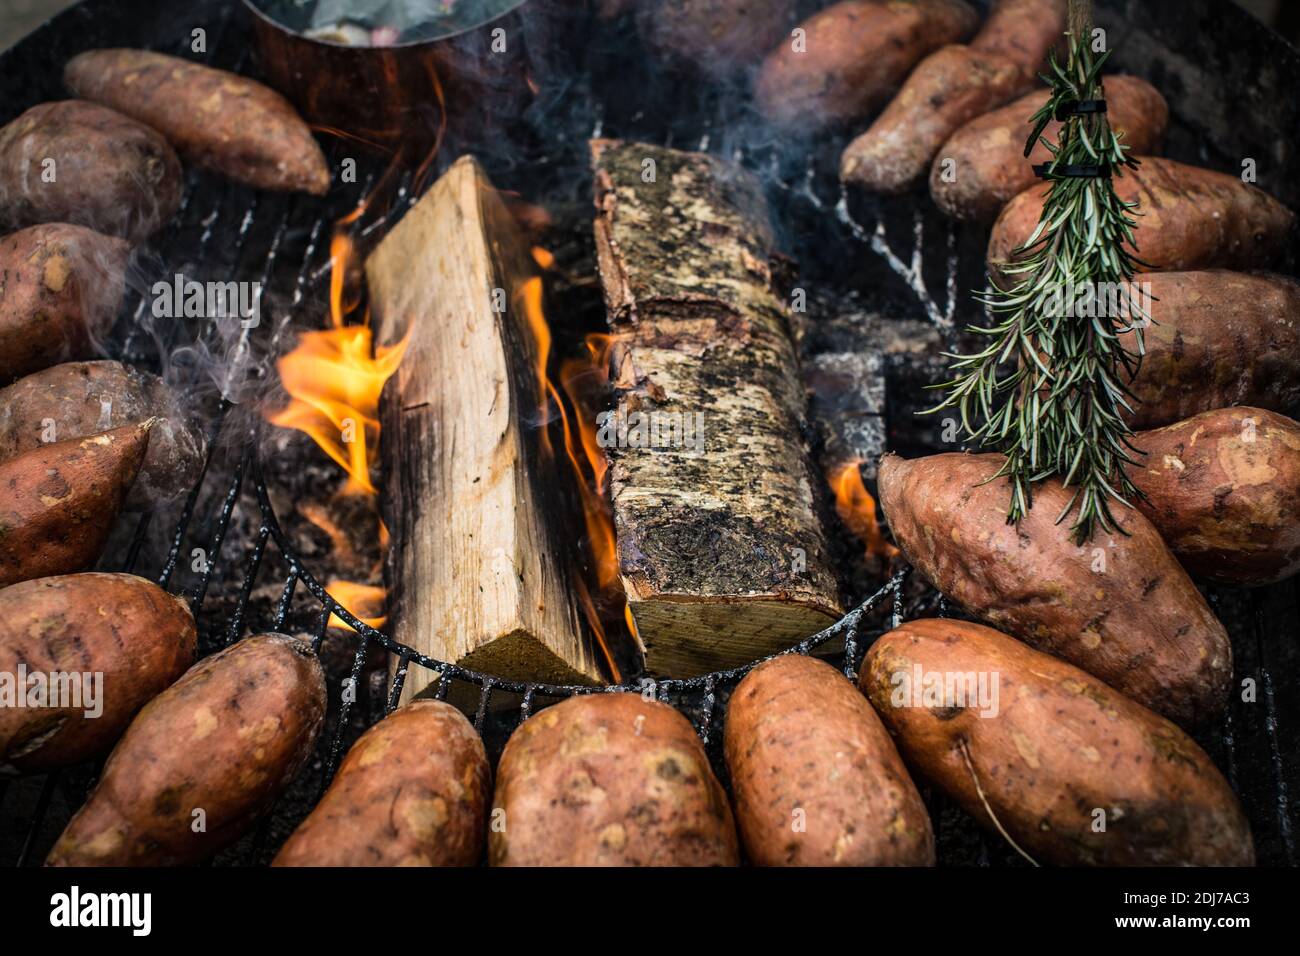 Batatas frescas enteras cocinadas en una parrilla Foto de stock